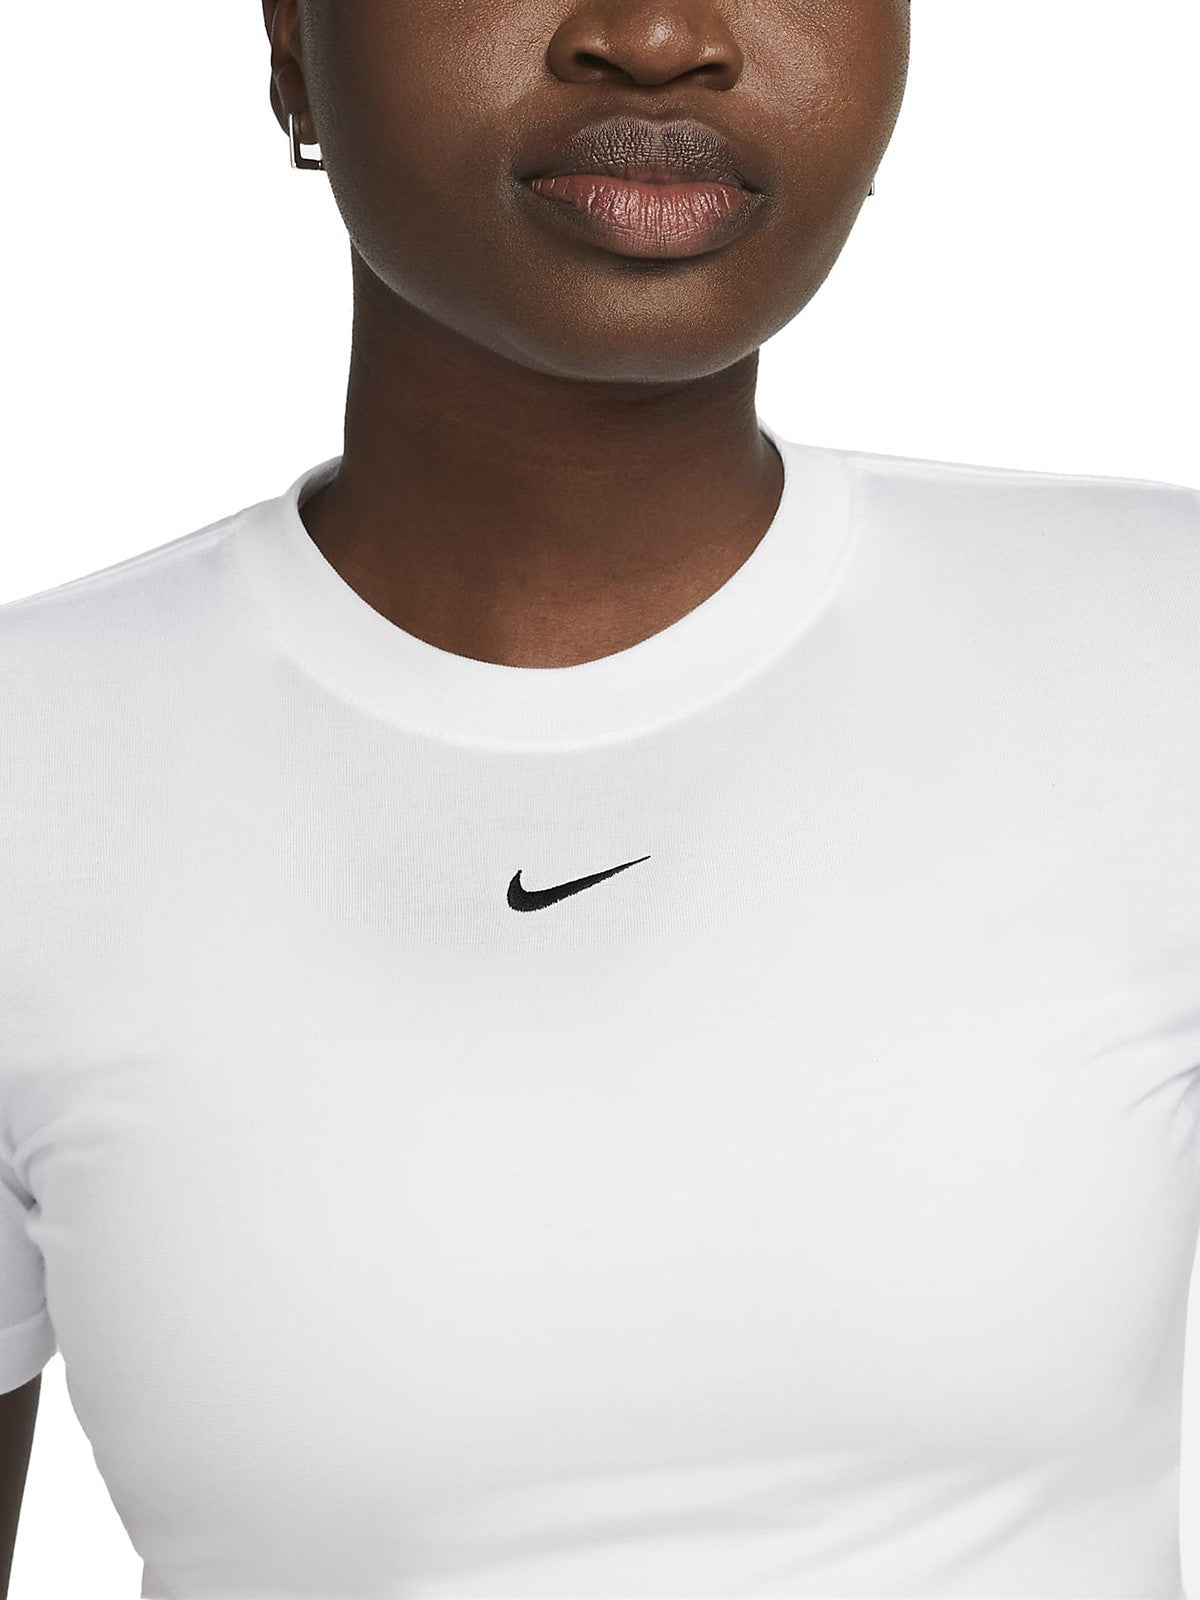 T-shirt Donna Nike - T-Shirt Corta Slim Fit Sportswear Essential - Bianco